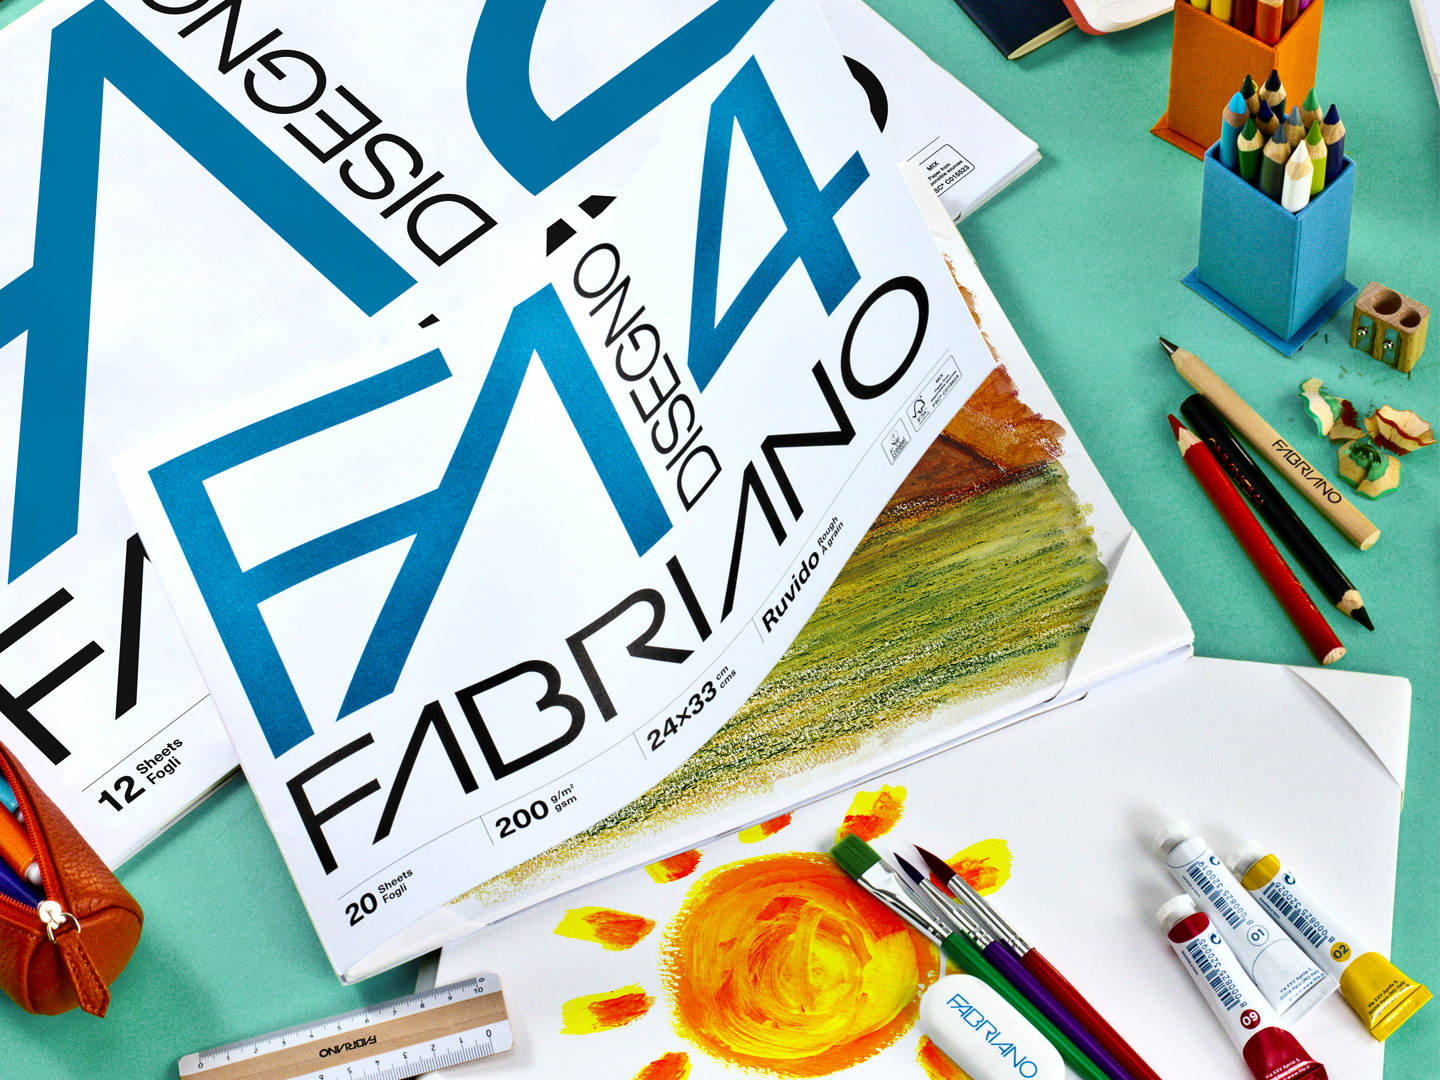 Fabriano Disegno 4,carta per Istituti Tecnici e architetti, grafici